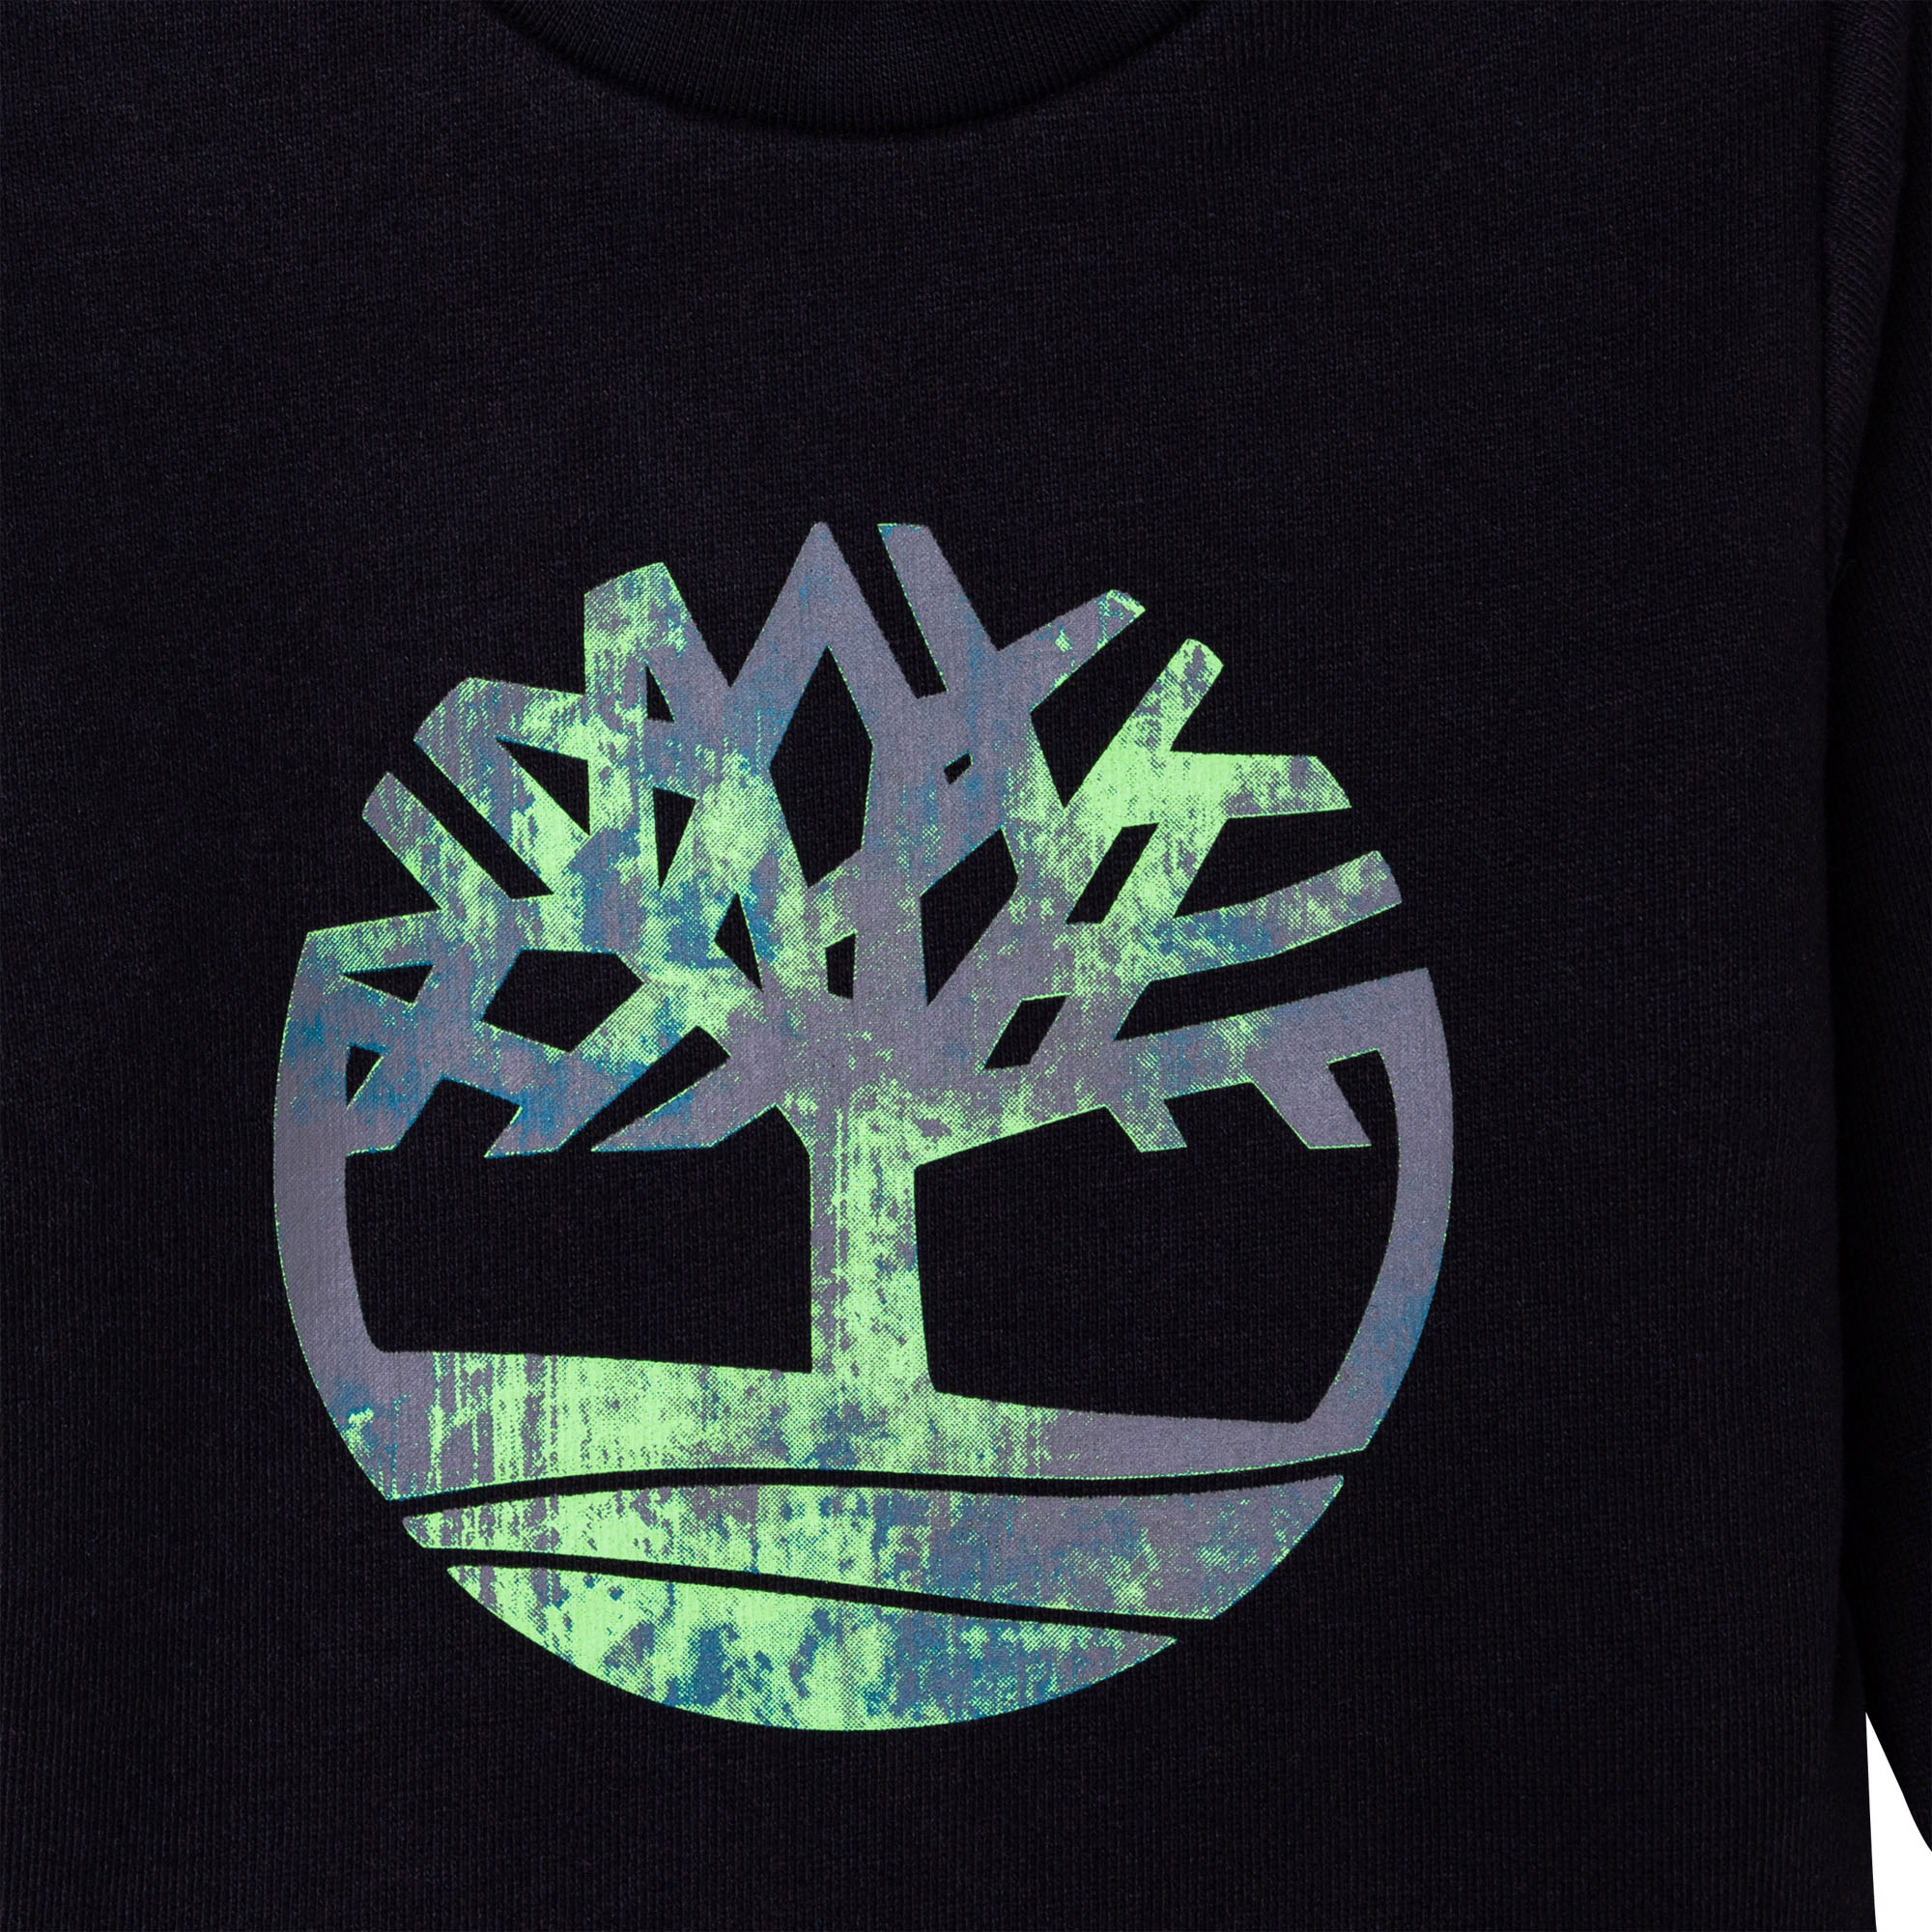 Sweatshirt aus Bio-Baumwolle TIMBERLAND Für JUNGE